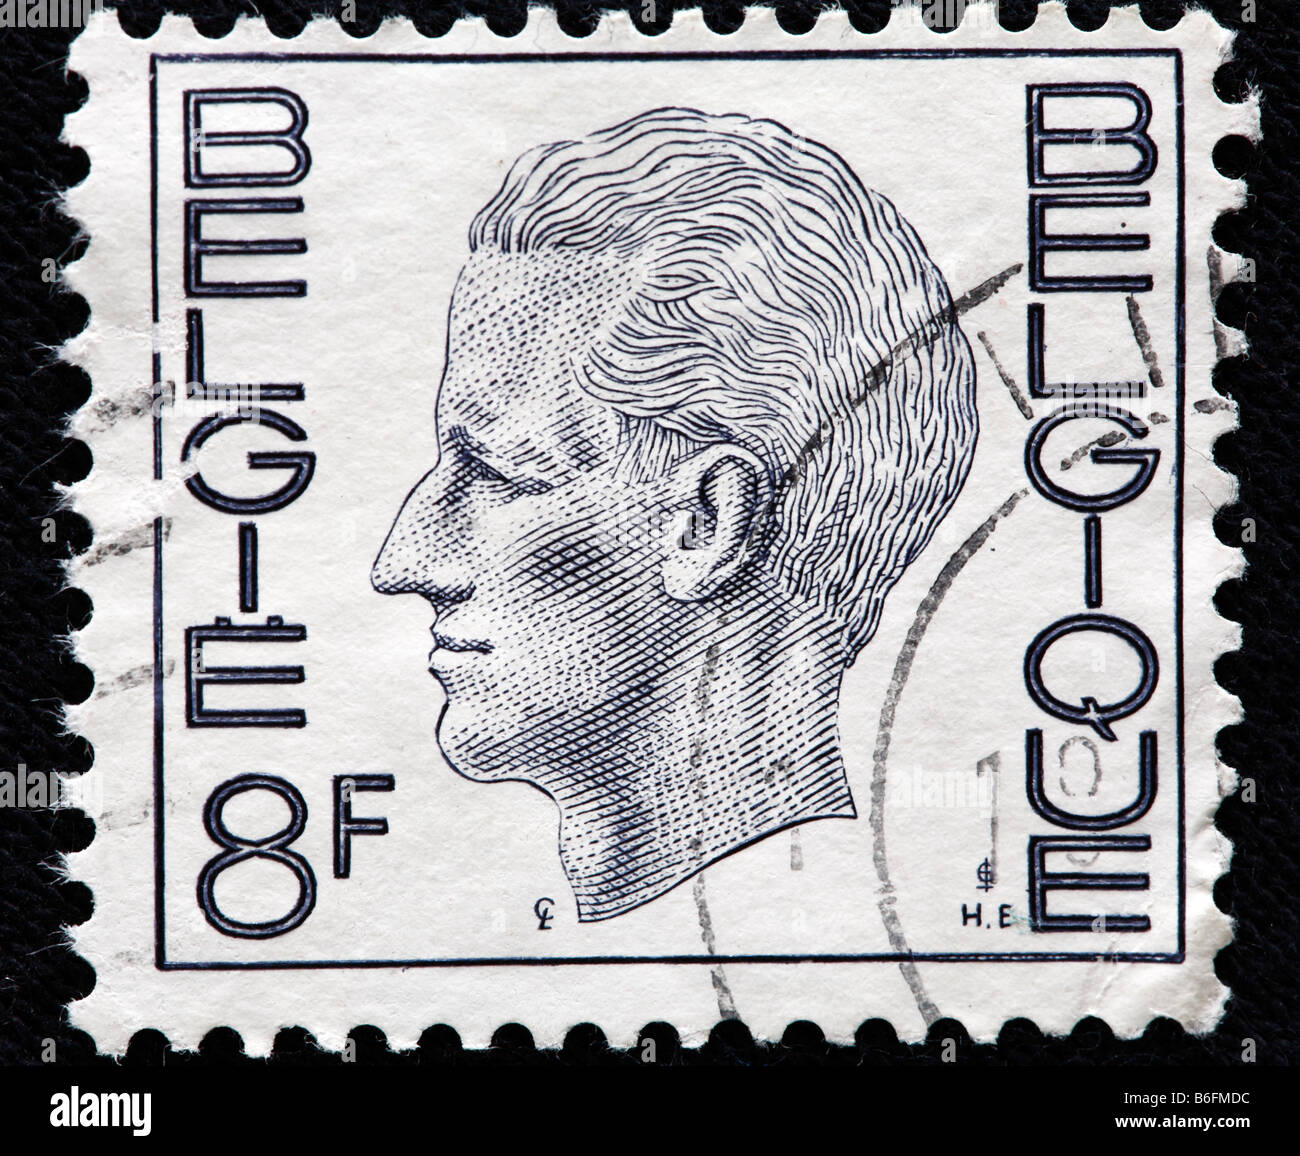 Je Roi Baudouin (Boudewijn) de la Belgique (1951-1993), timbre-poste, Belgique Banque D'Images